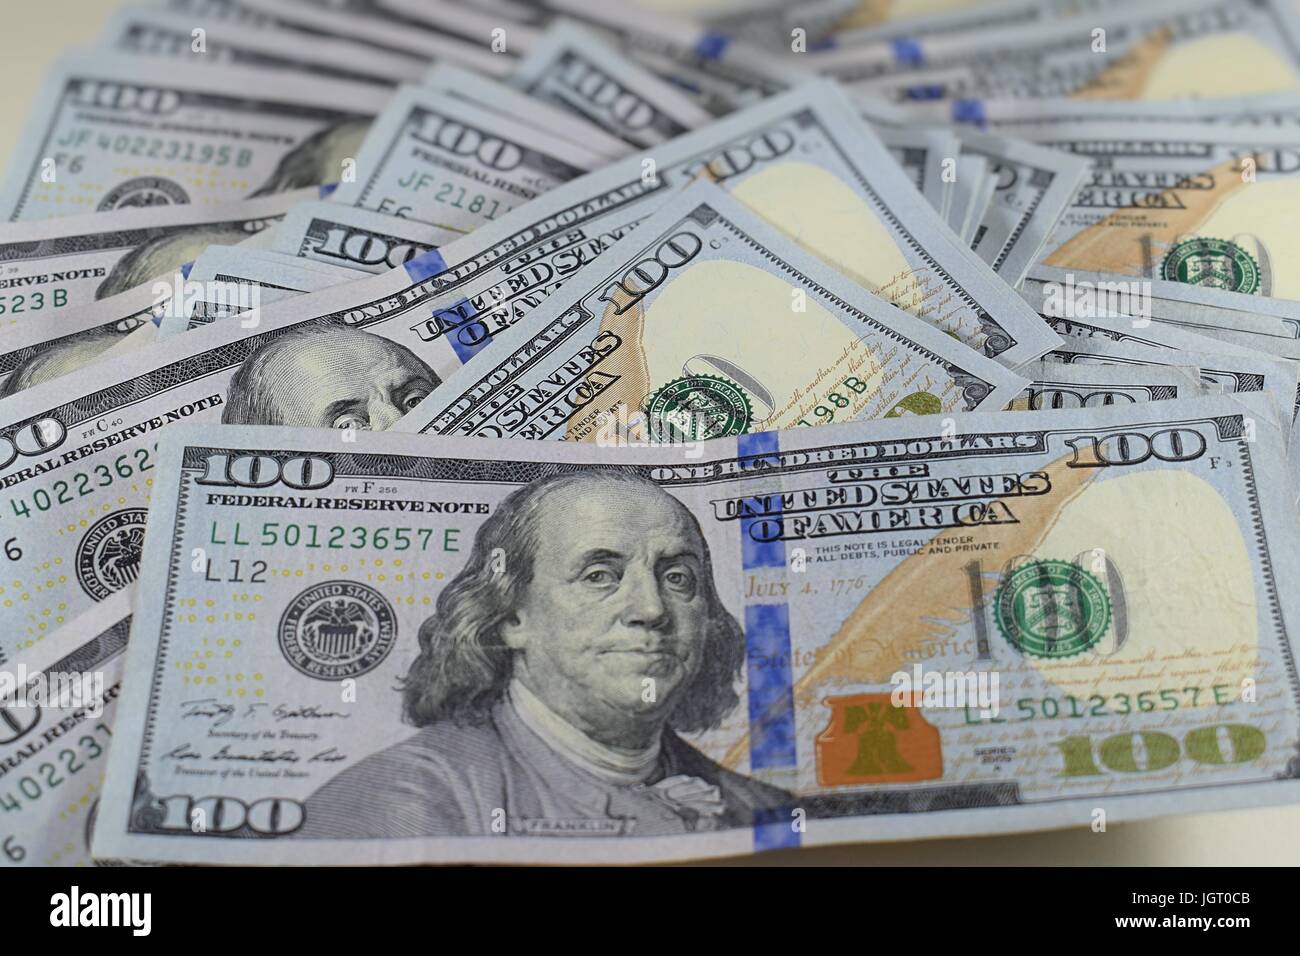 Unordentlichen Haufen neuer hundert Dollar bills amerikanisches Geld 100 USD Bargeld, die den Rahmen zu füllen Stockfoto